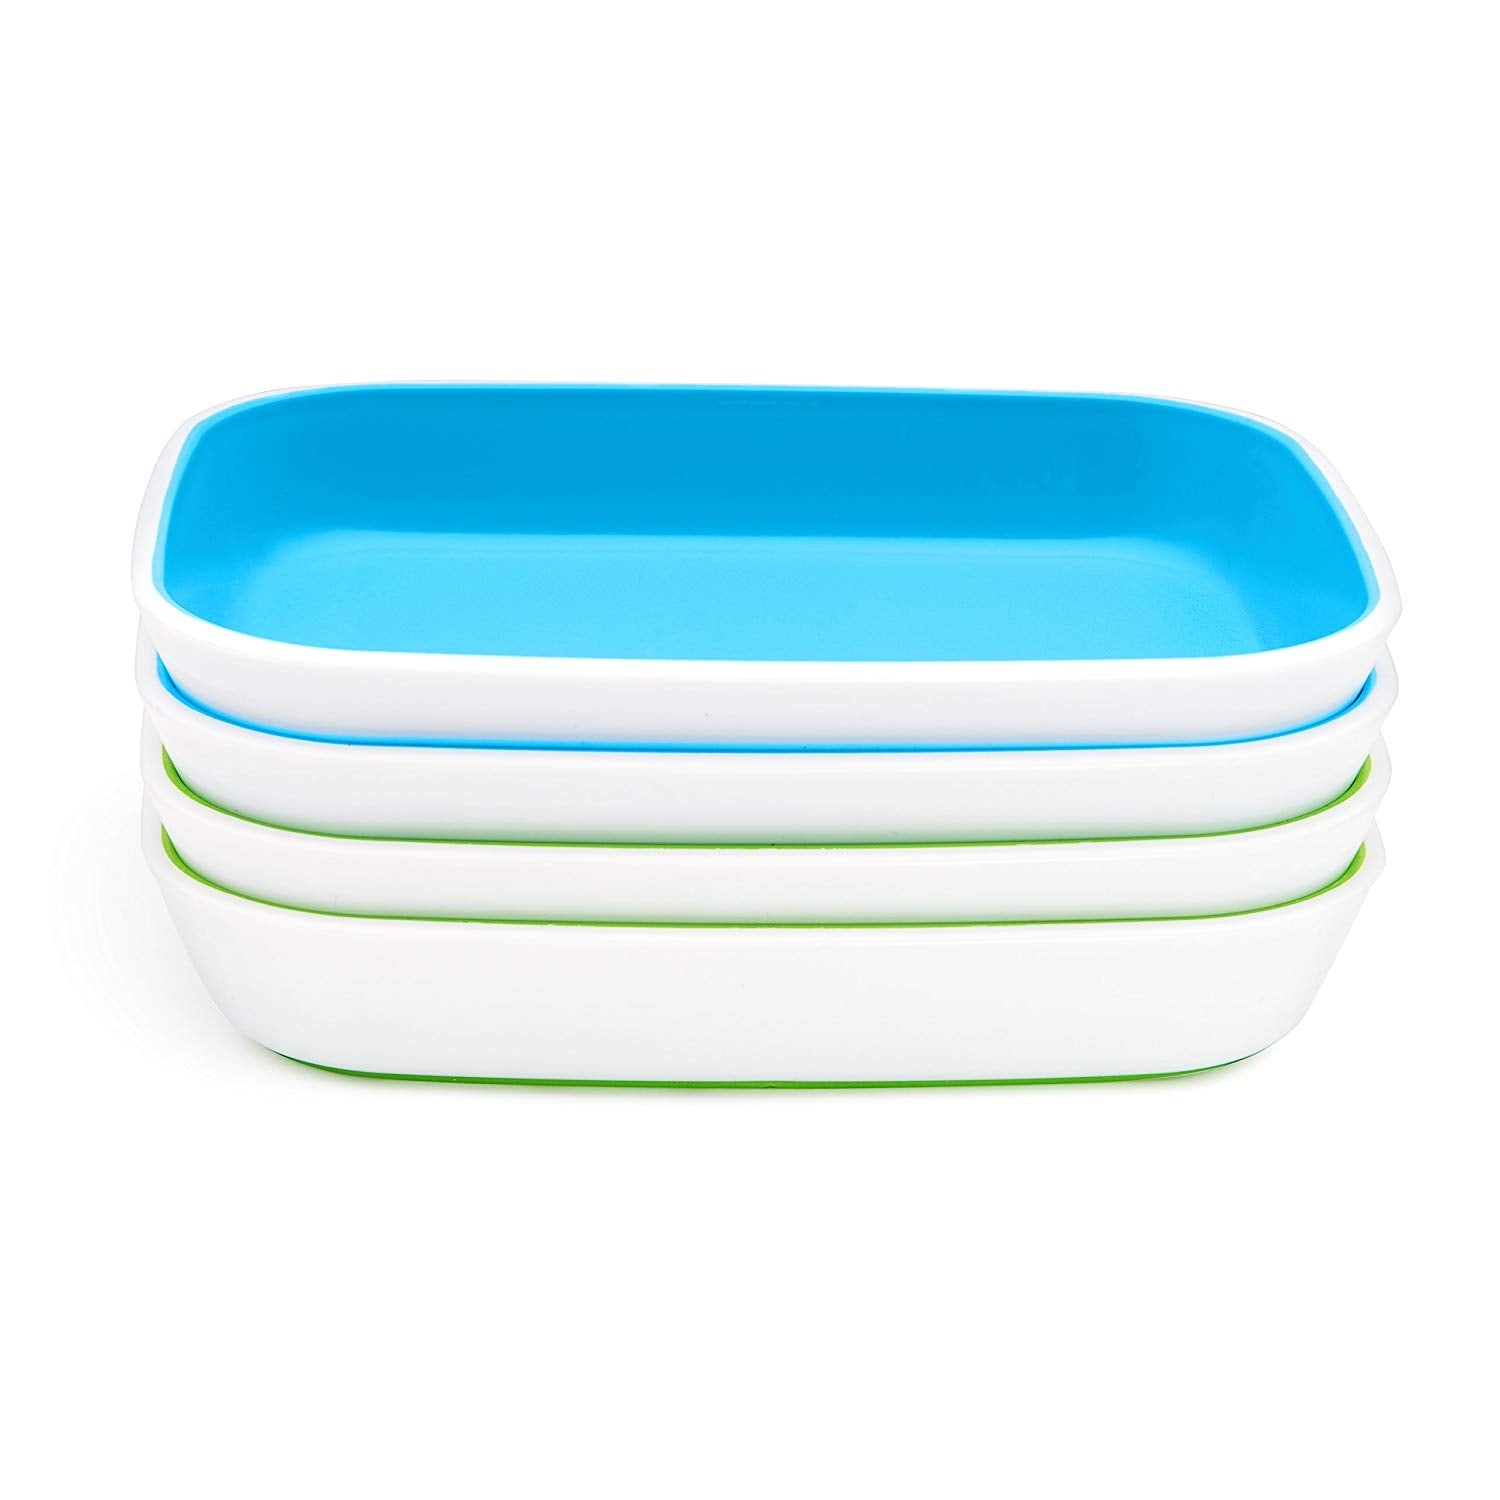 Splash Plates - Blue/Green - 4pk uniq